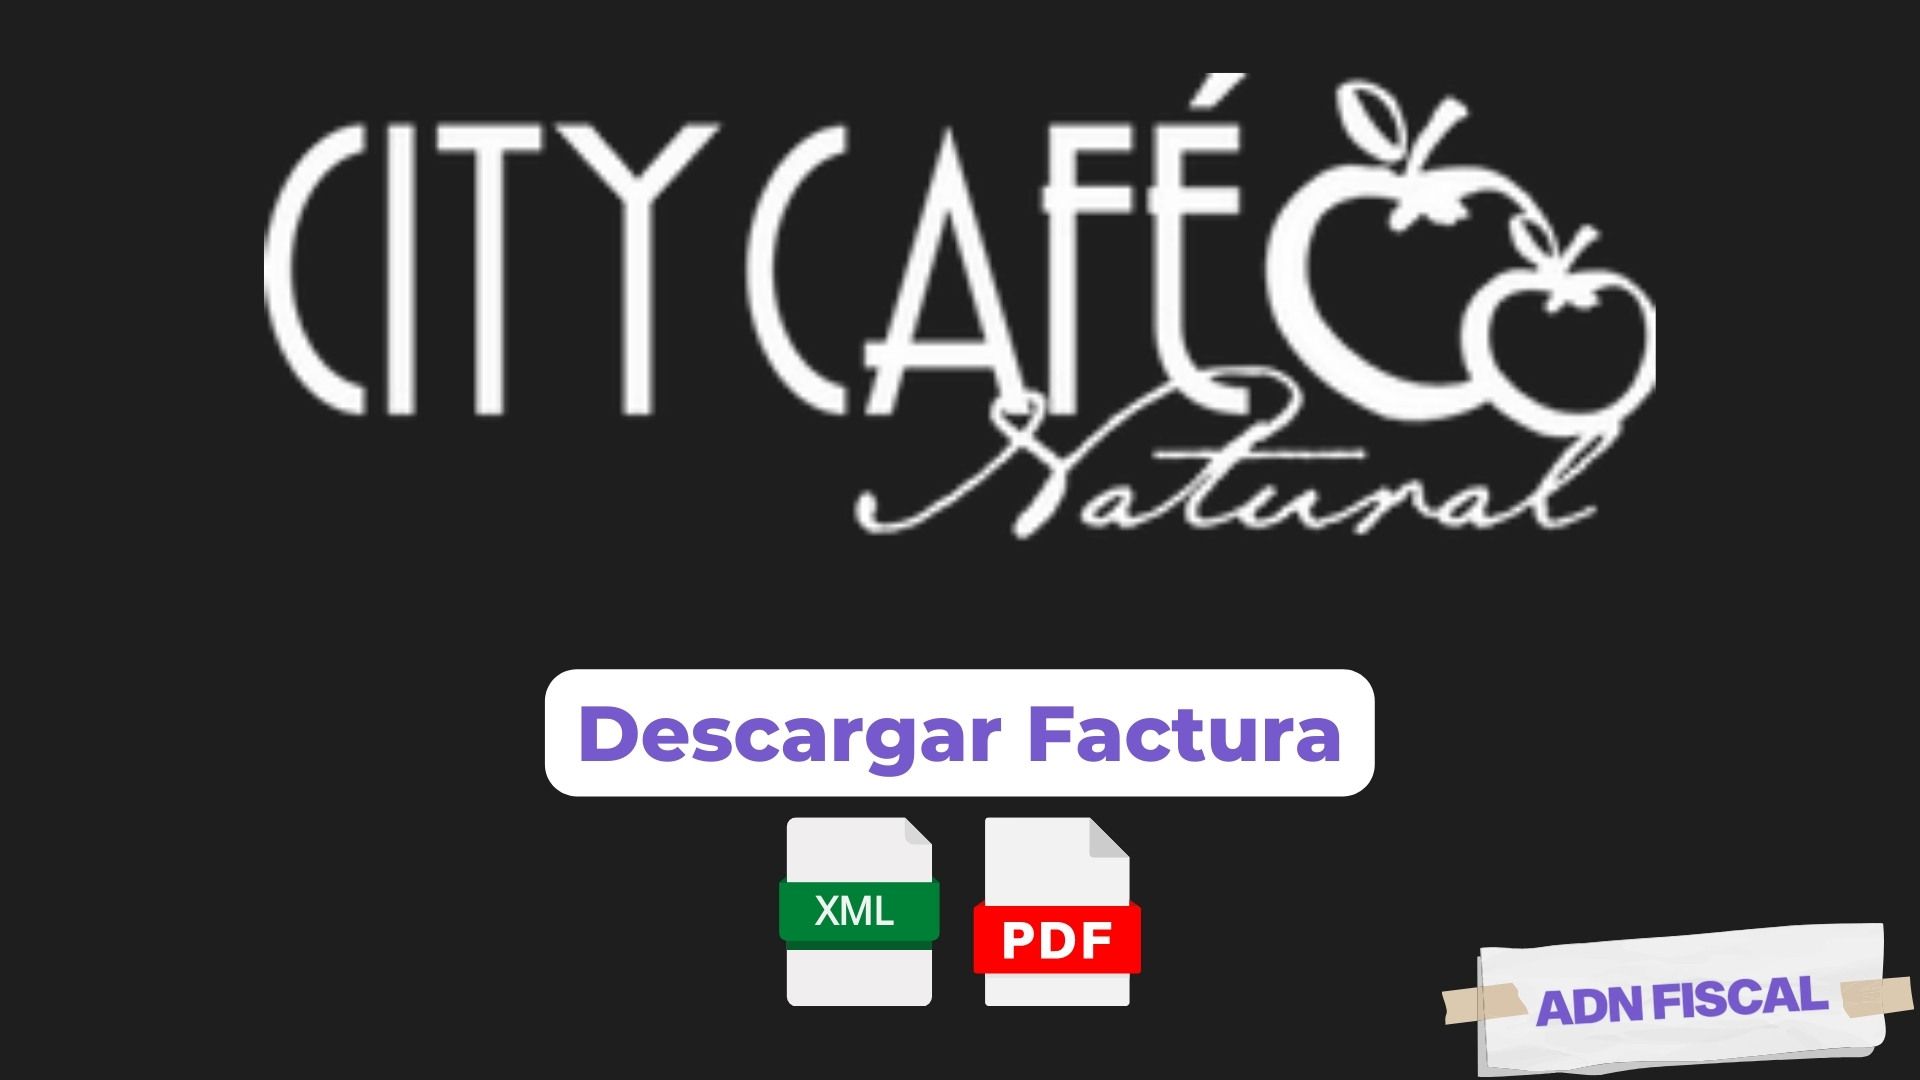 Facturacion CITY CAFE Cafeterías ☕ ADN Fiscal